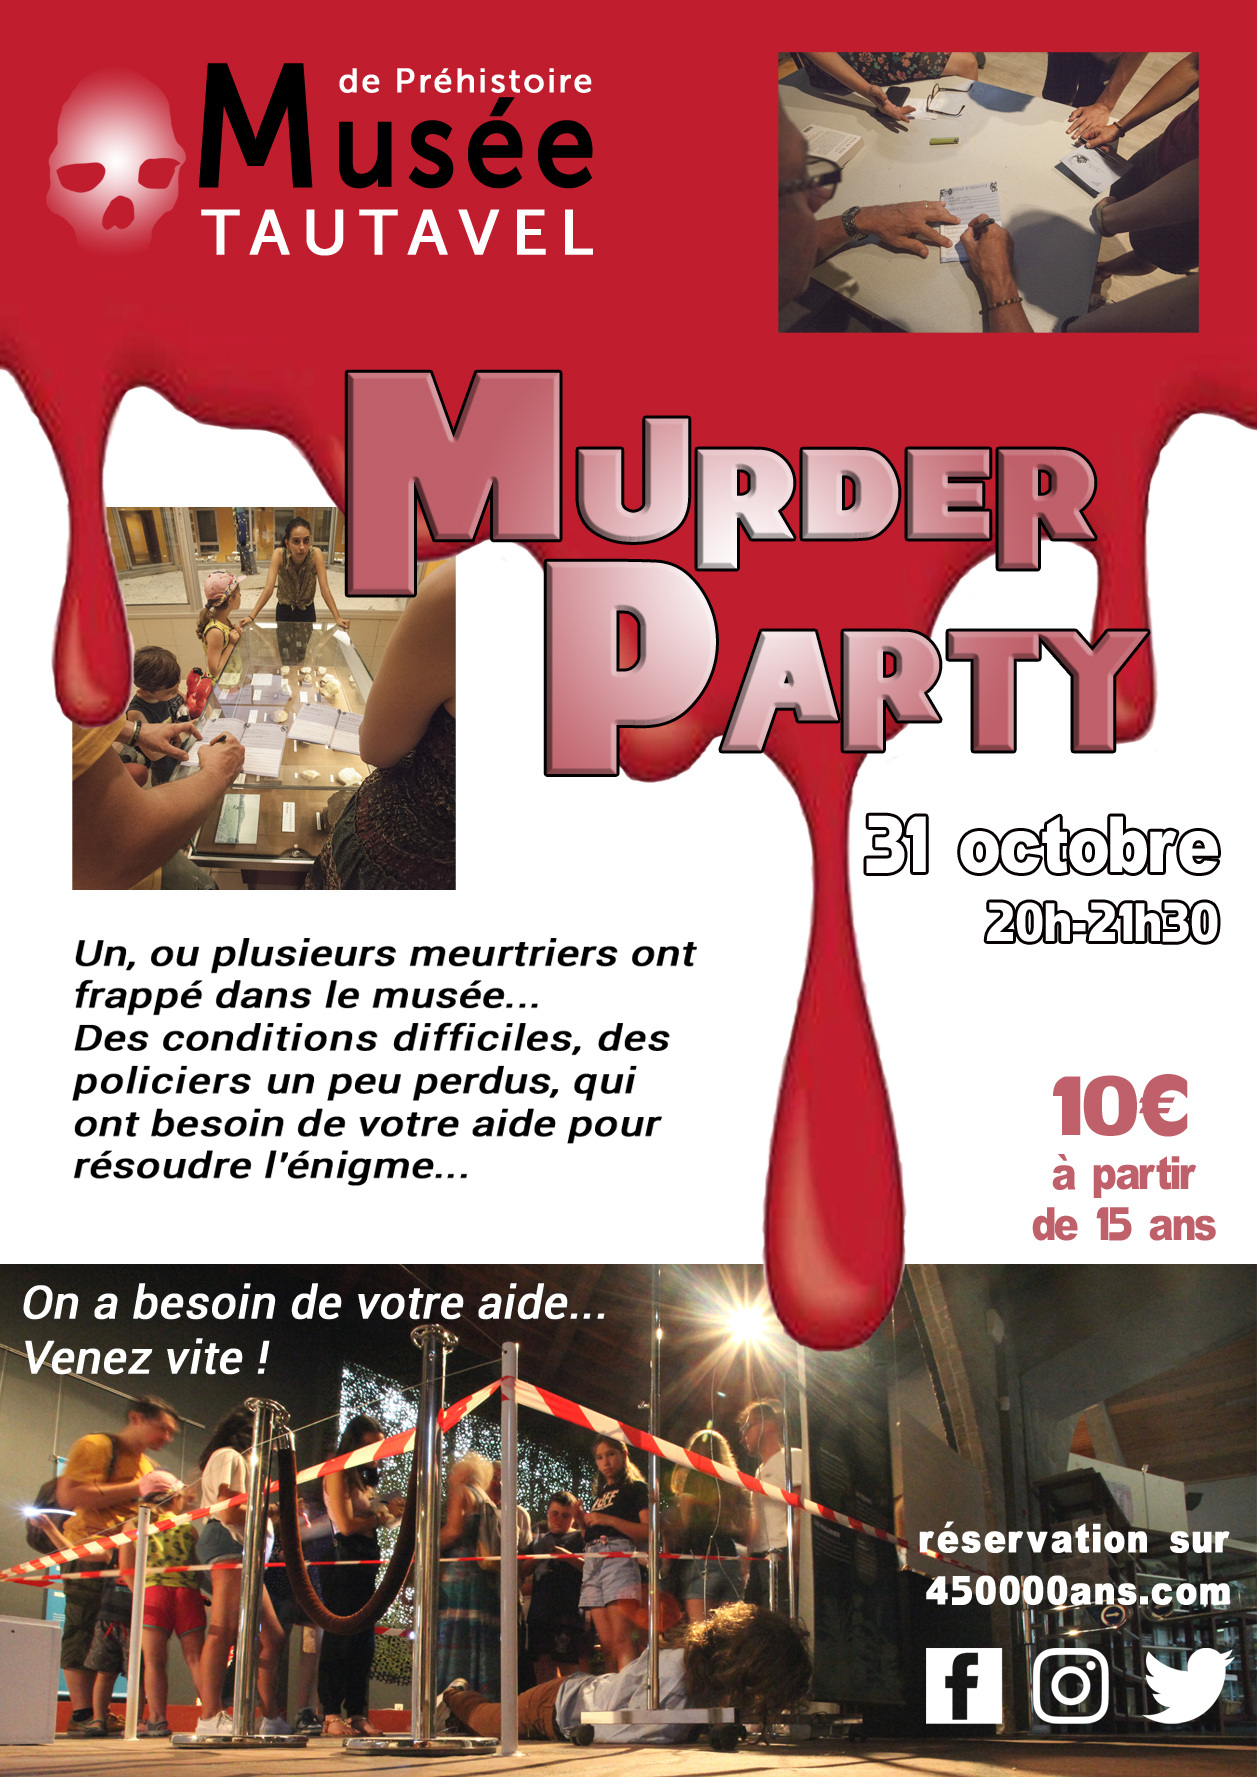 "Halloween Murder Party" au Musée de Préhistoire de Tautavel